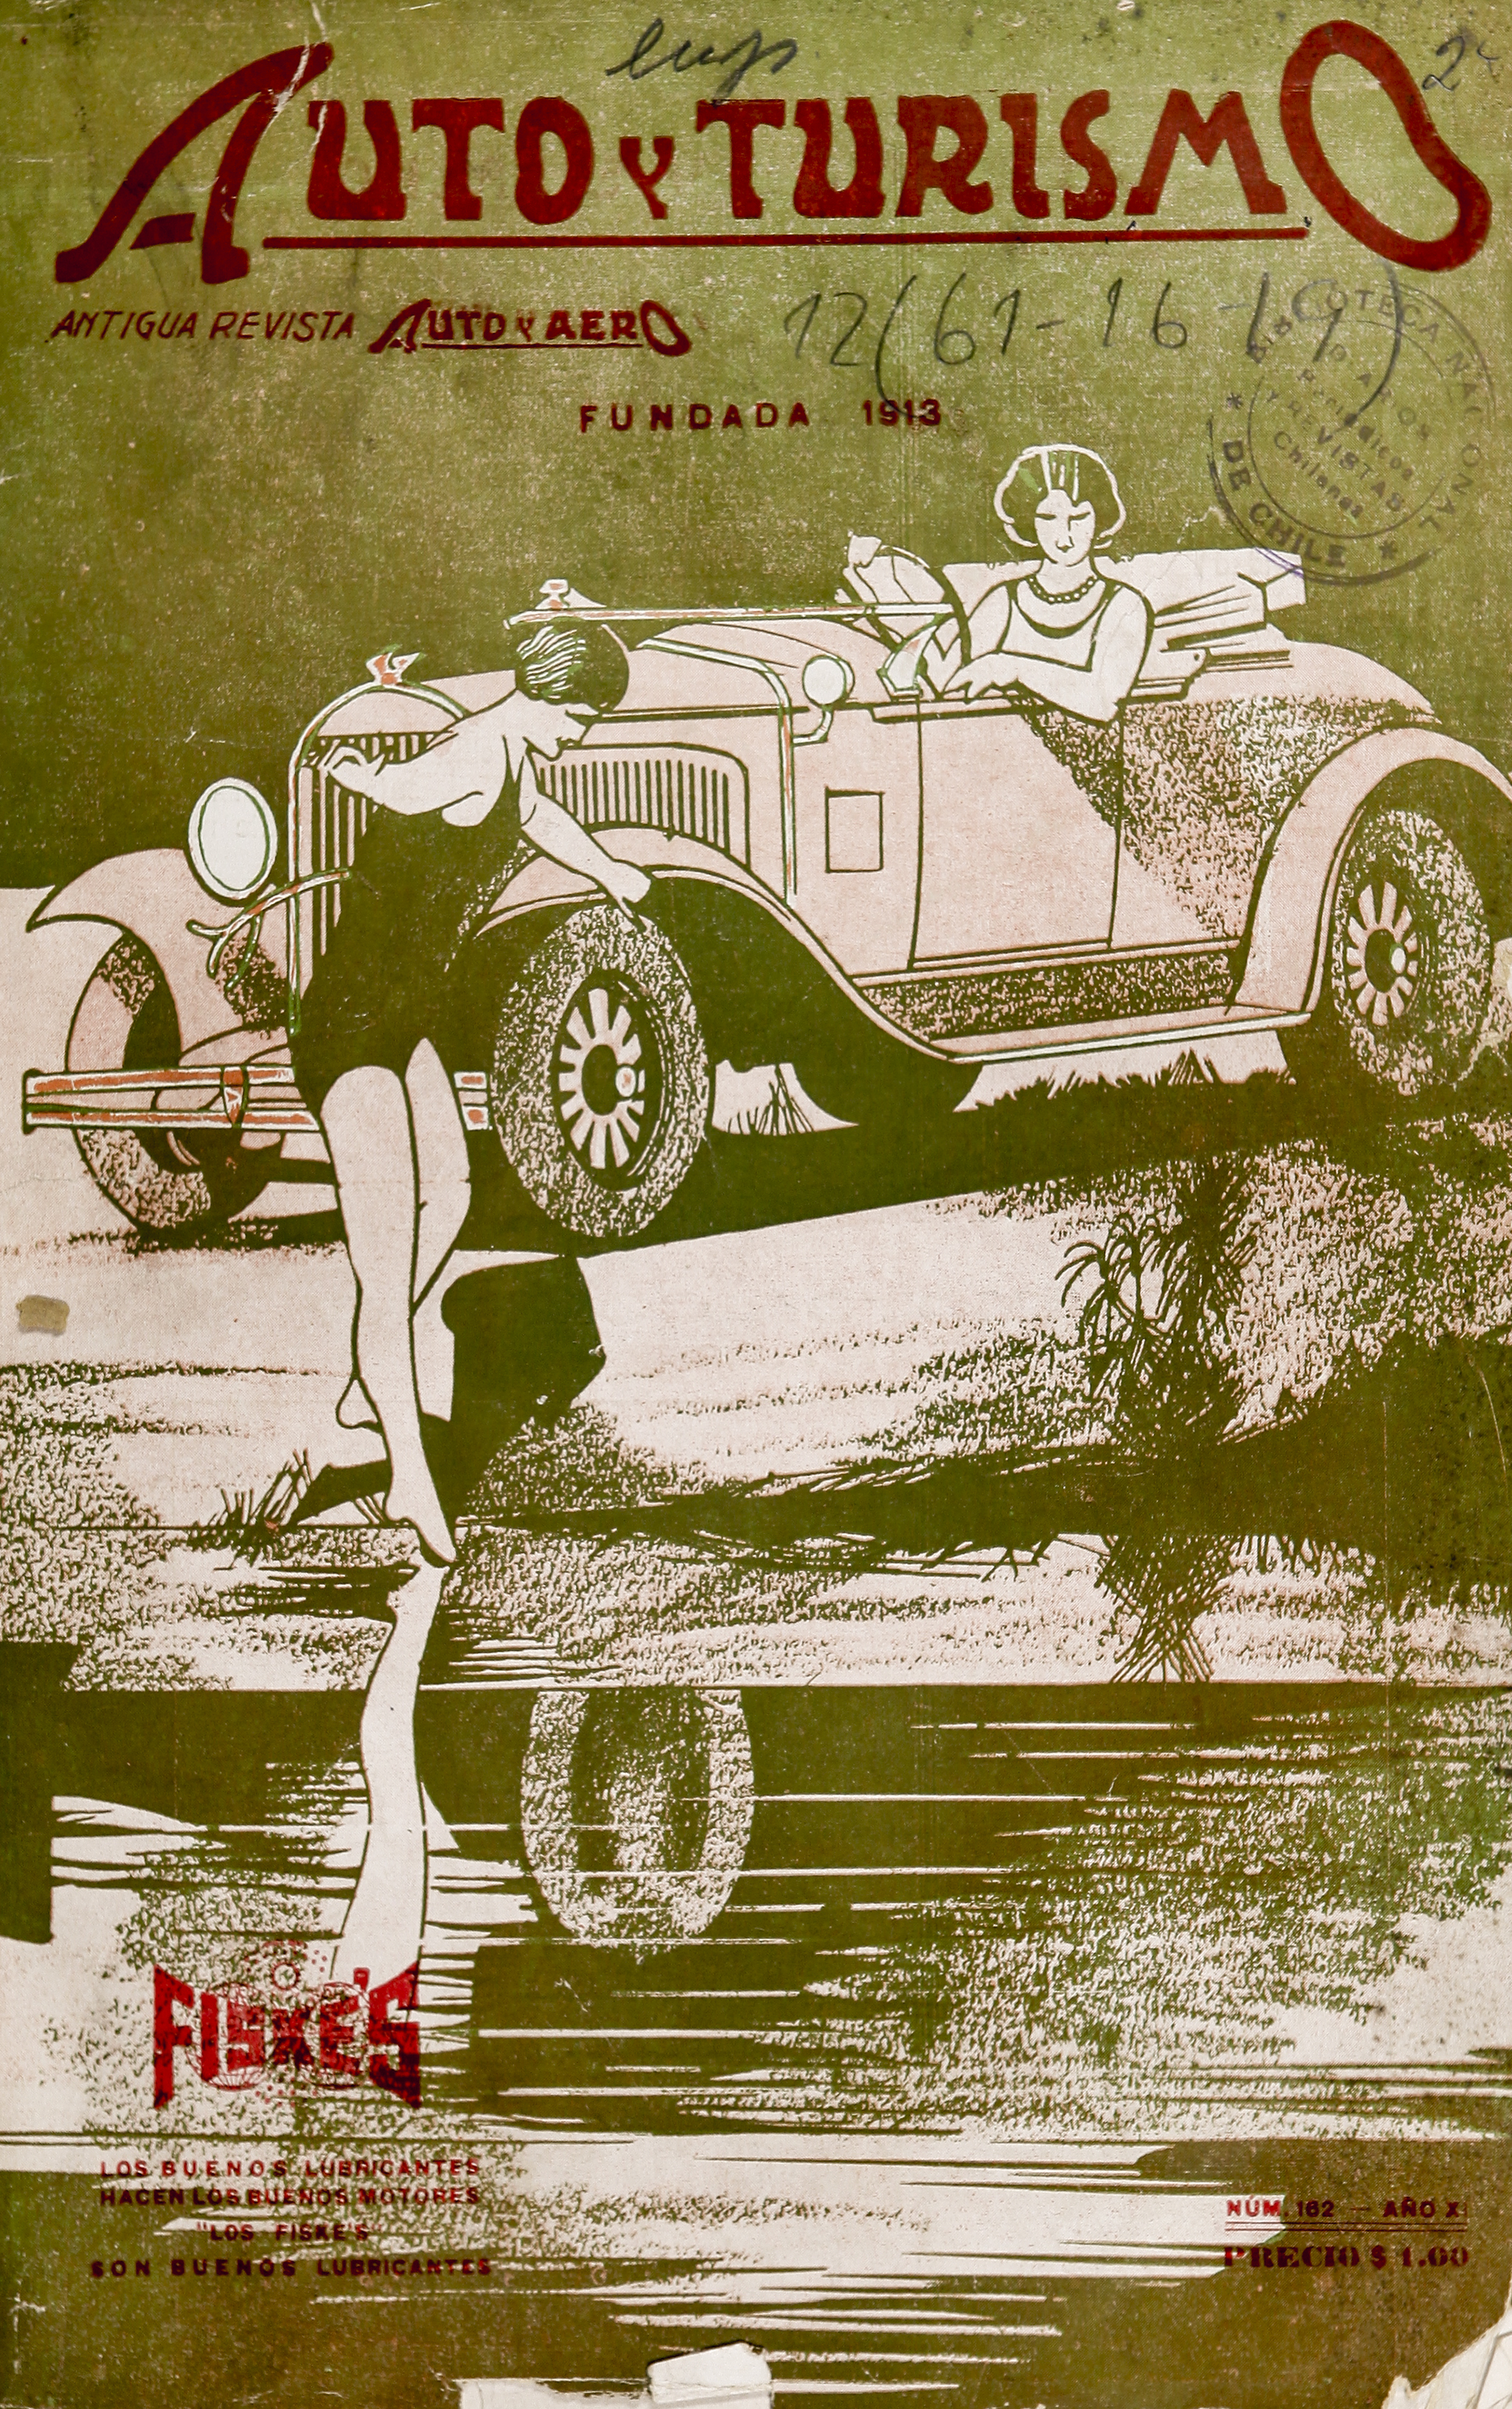 Auto y Turismo nº162 (ene.1929)